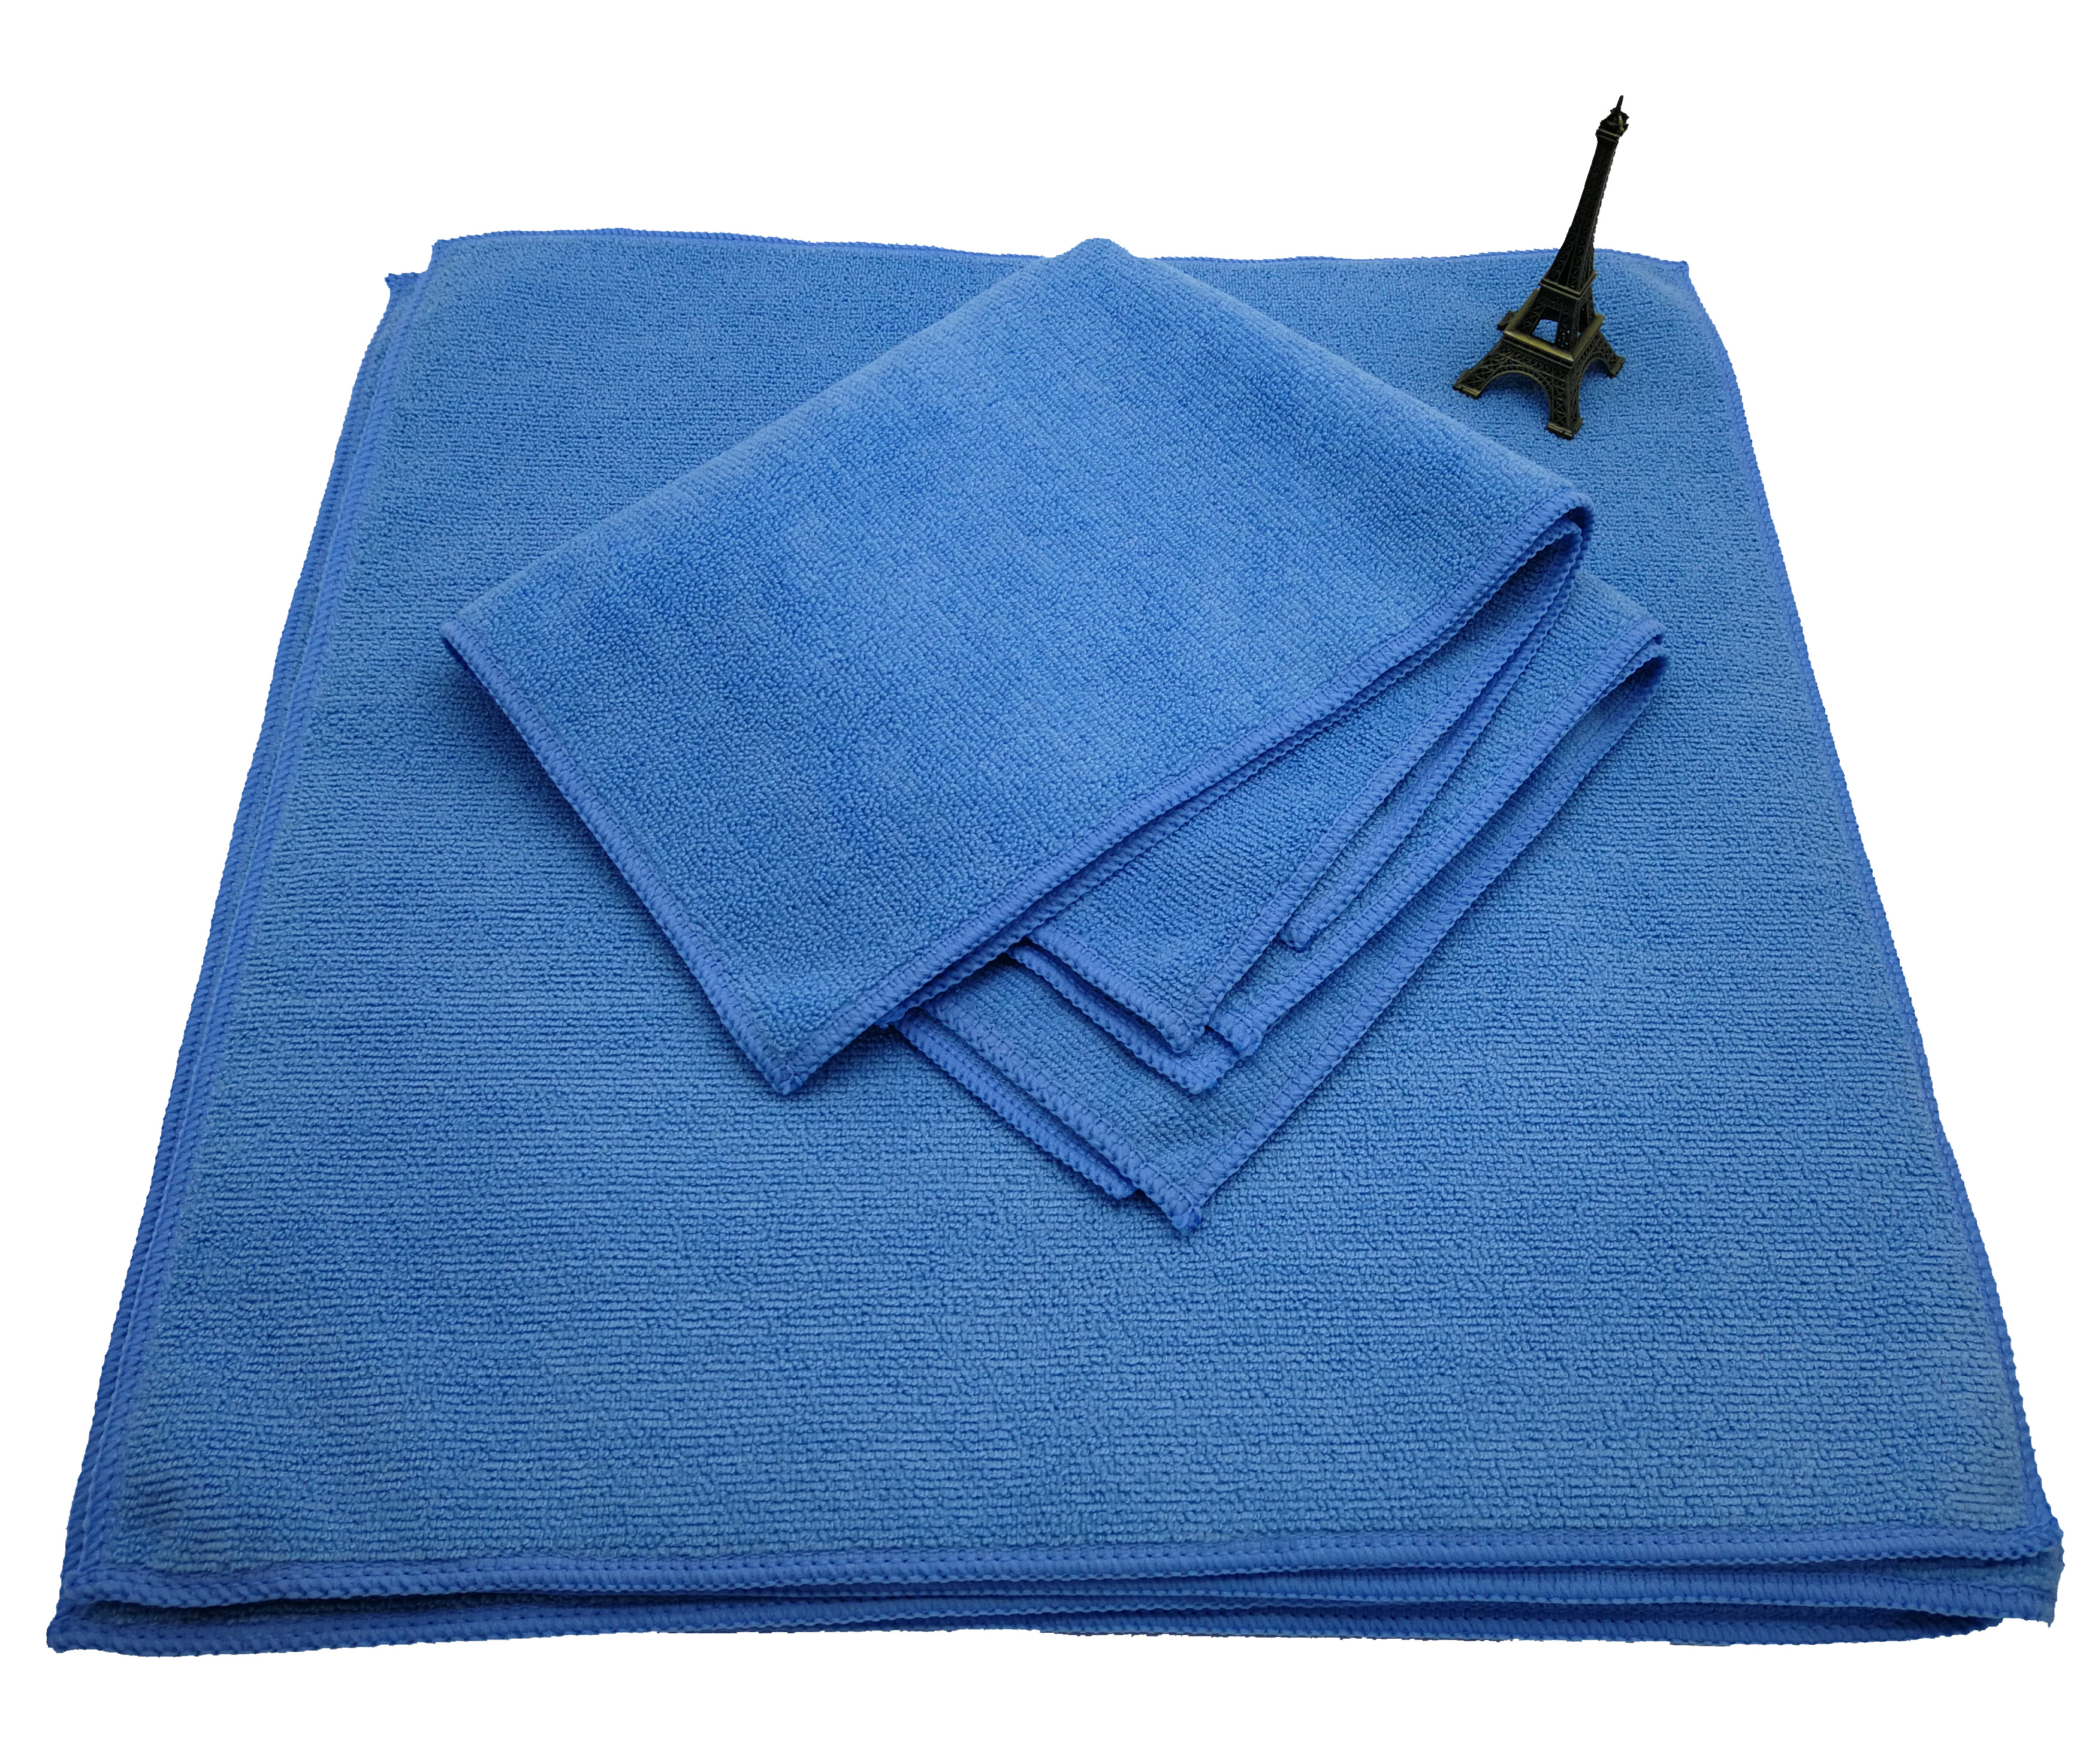 Chinese Professional Emboss Microfiber Towel - ALL PURPOSR MICROFIBER TOWEL – Jiexu